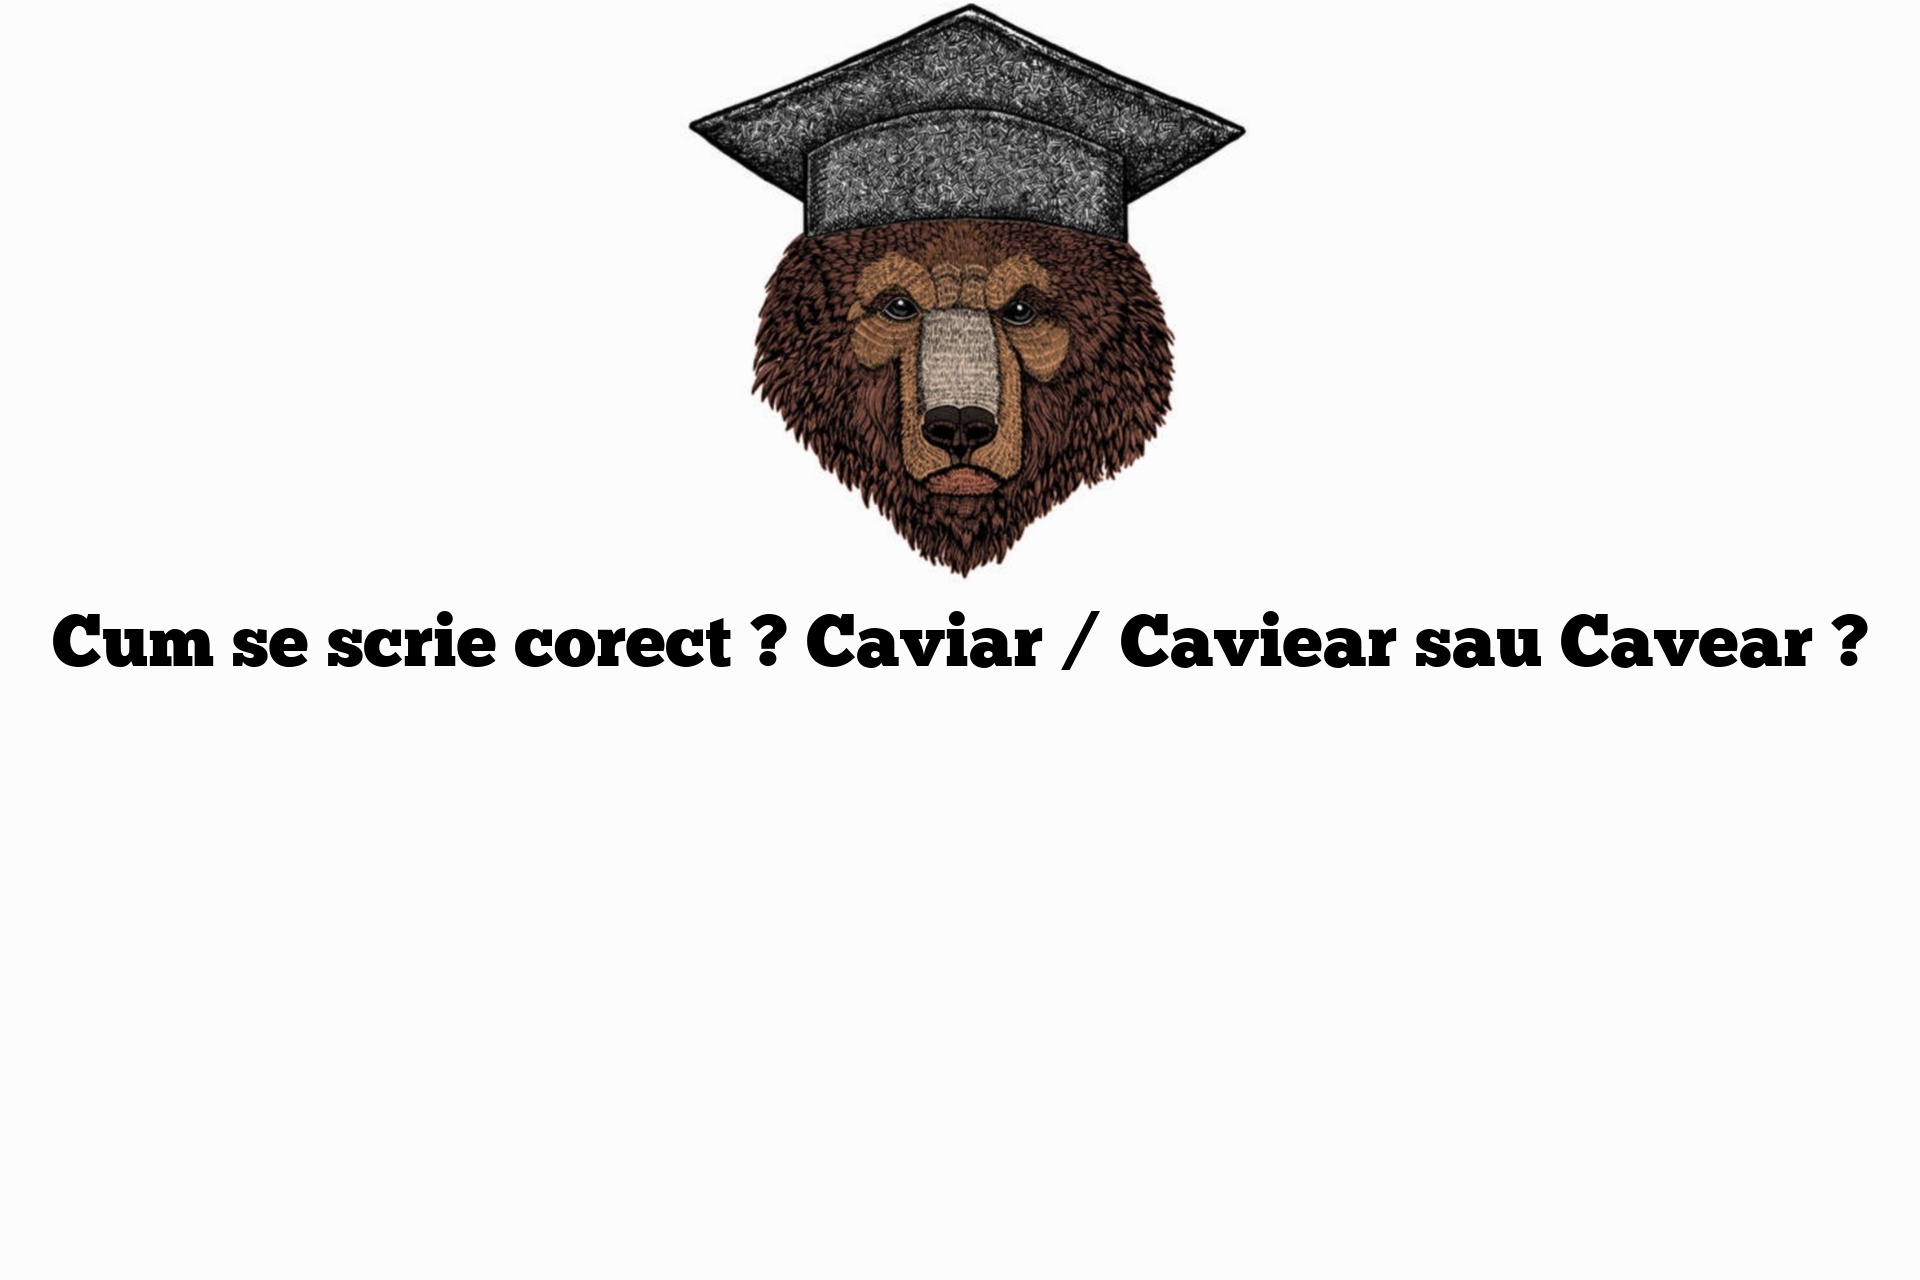 Cum se scrie corect ? Caviar / Caviear sau Cavear ?